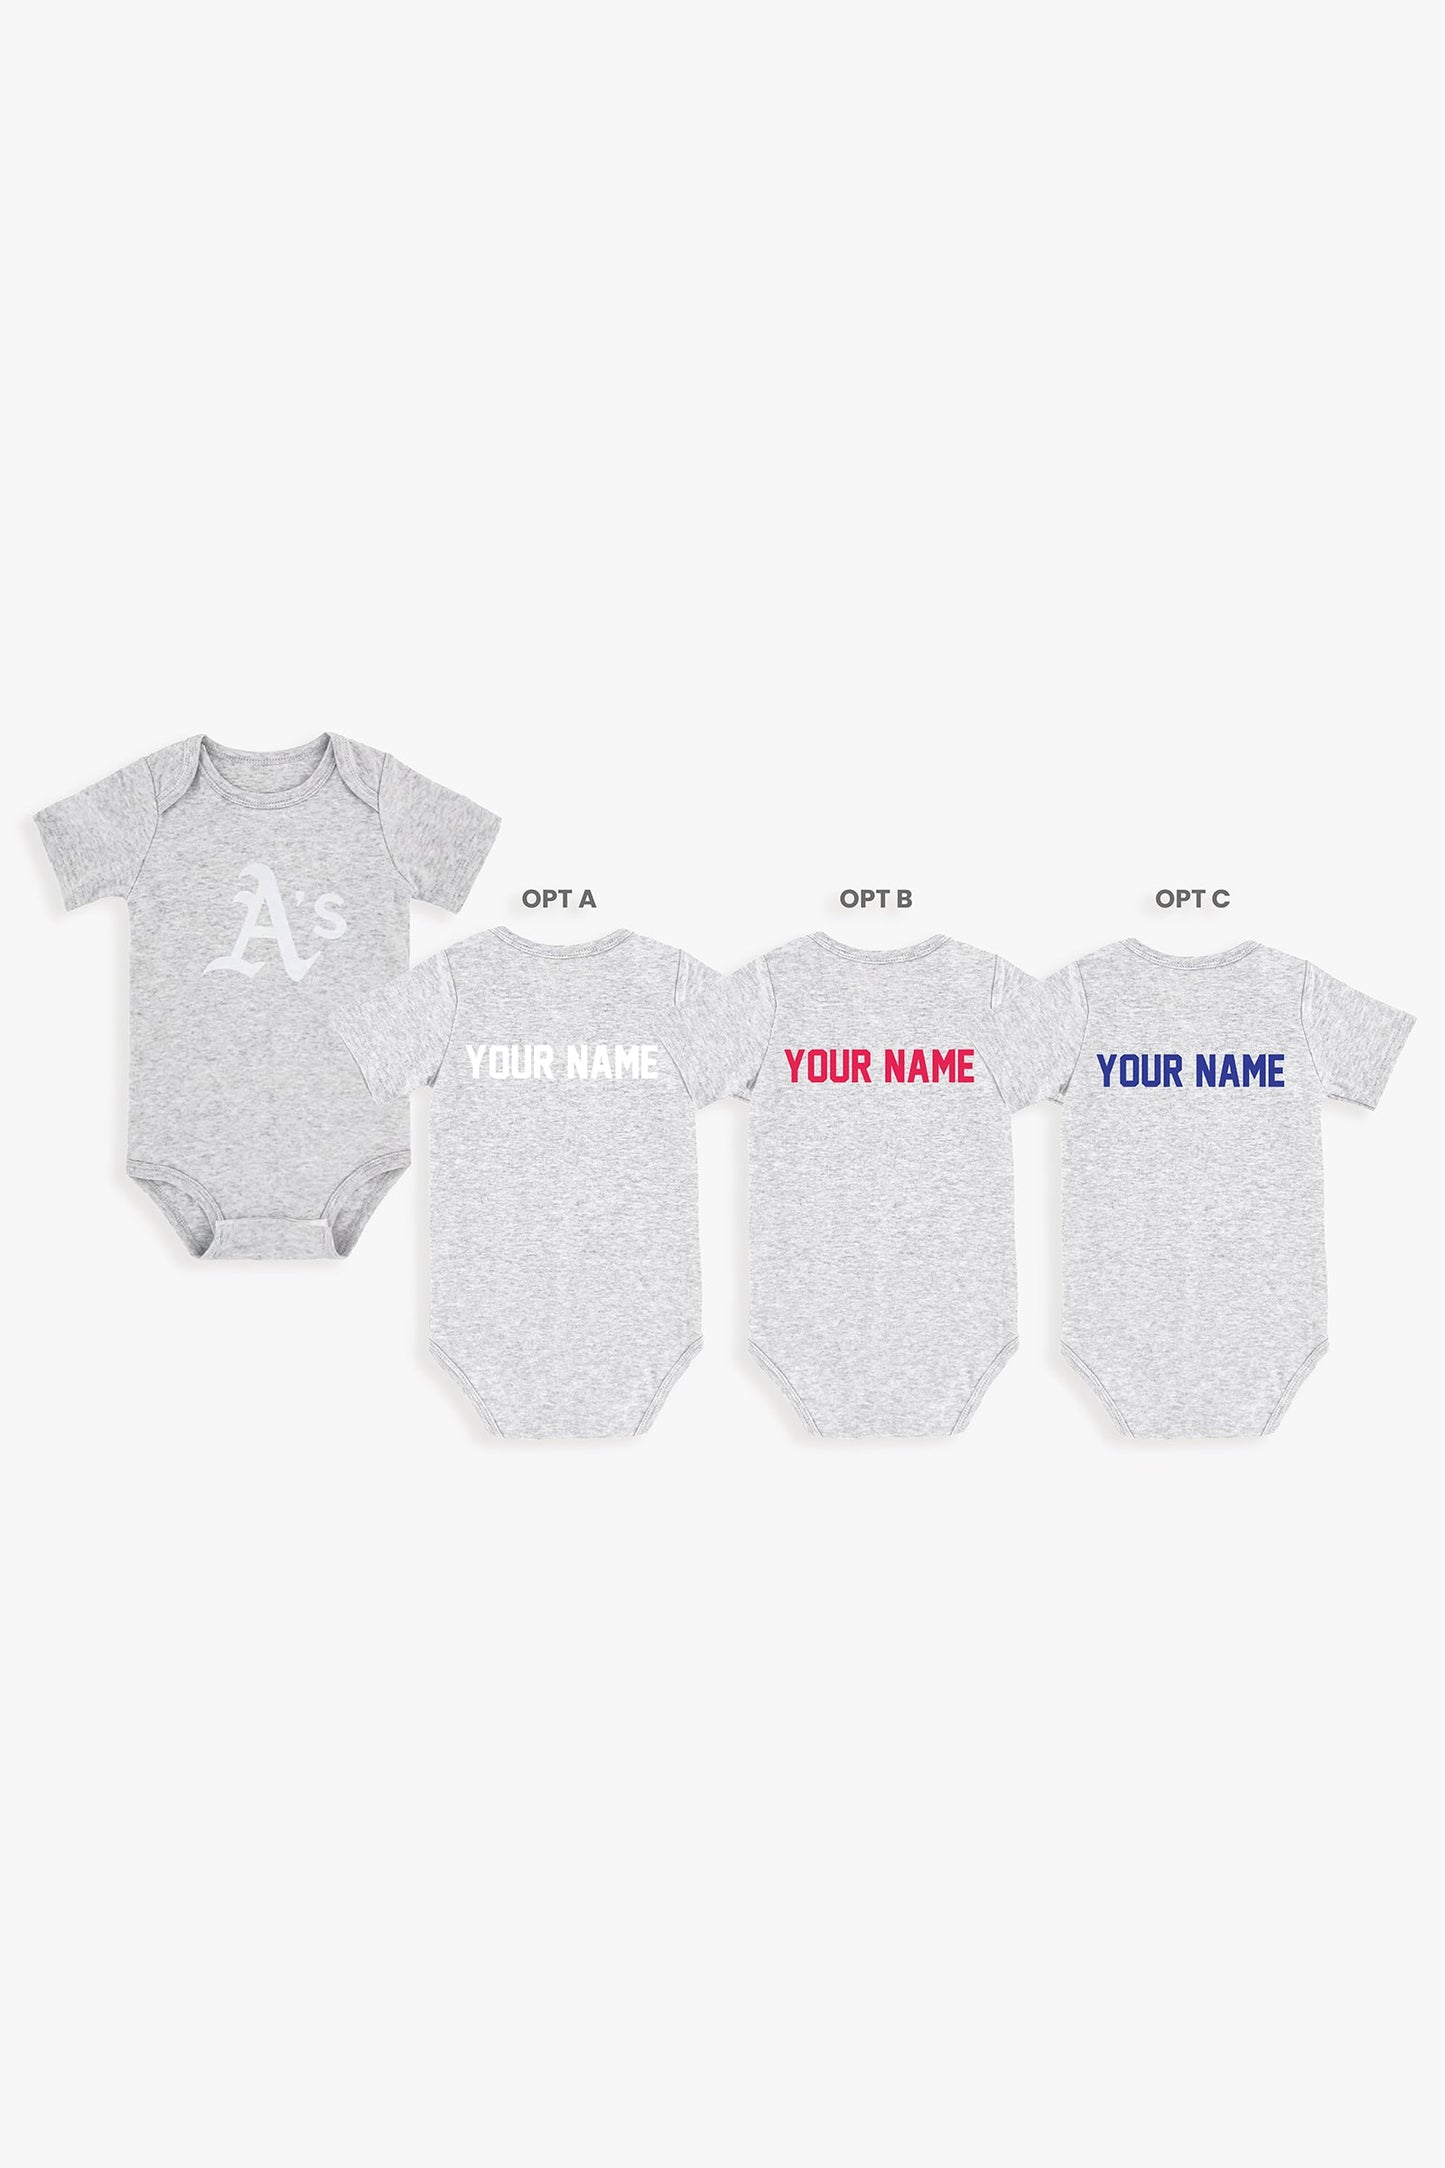 Customizable MLB Baby Onesie Bodysuit in Grey (9-12 Months)